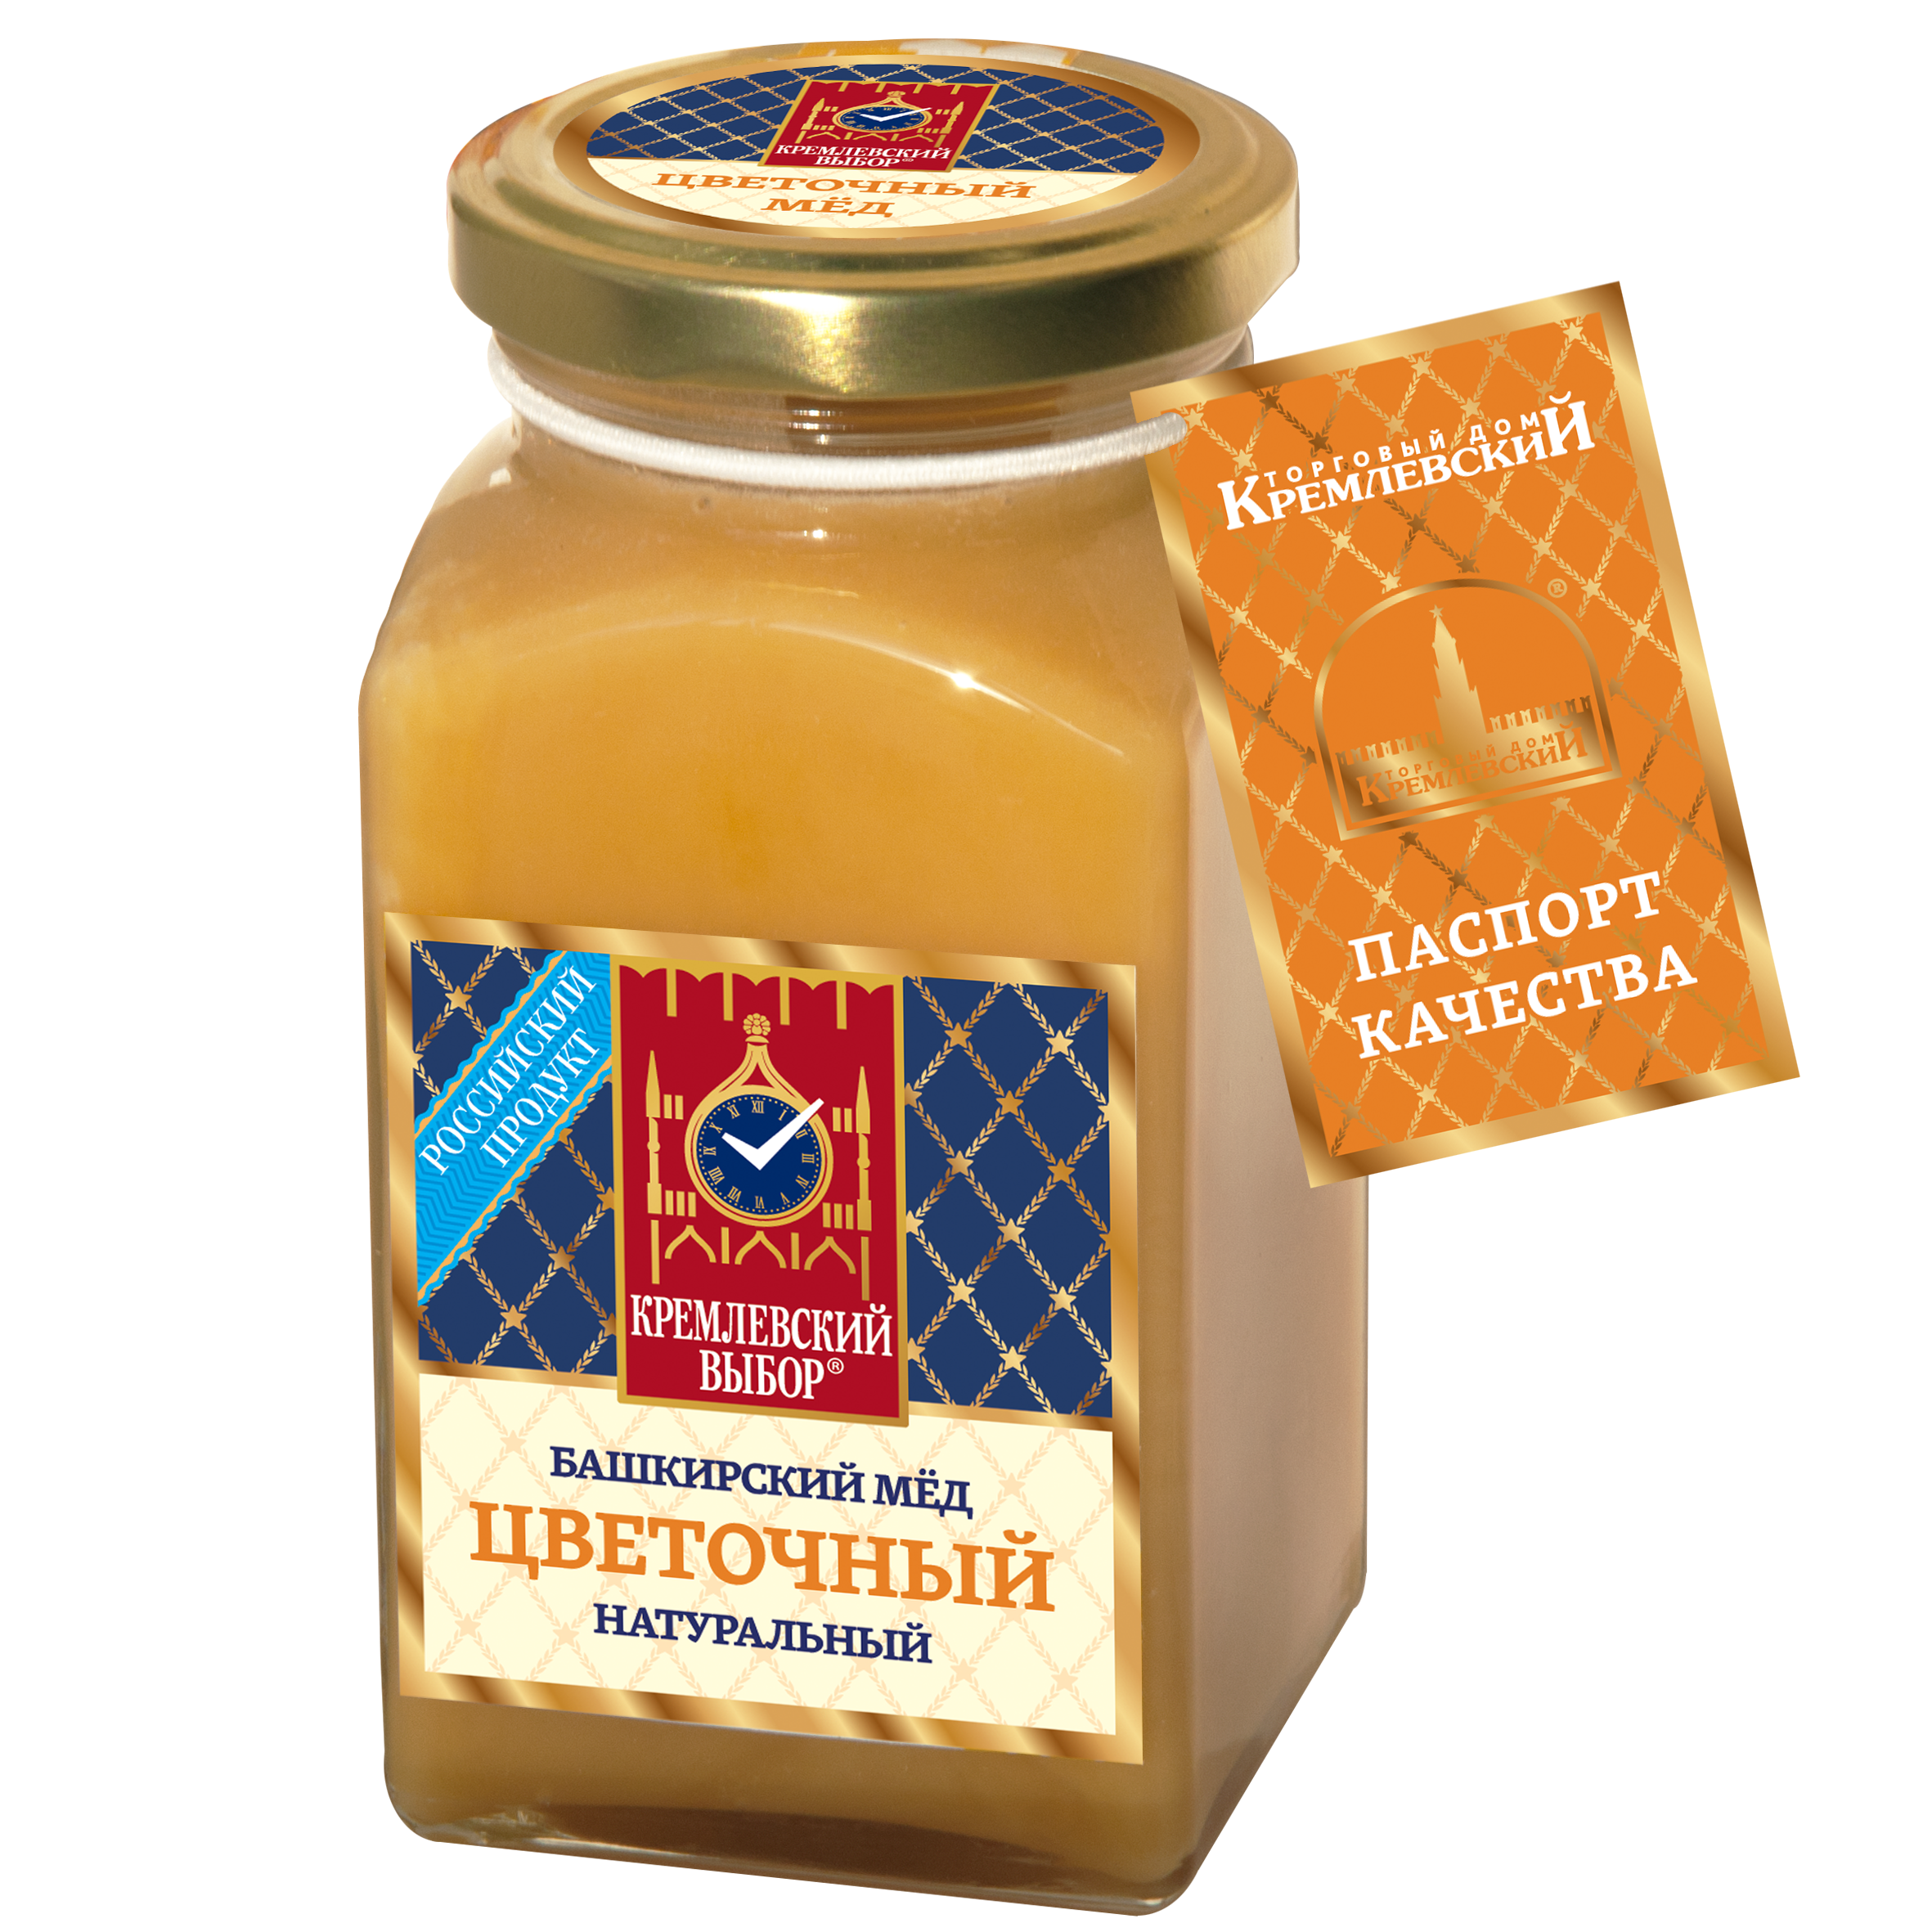 Башкирский мёд цветочный натуральный, 400 г